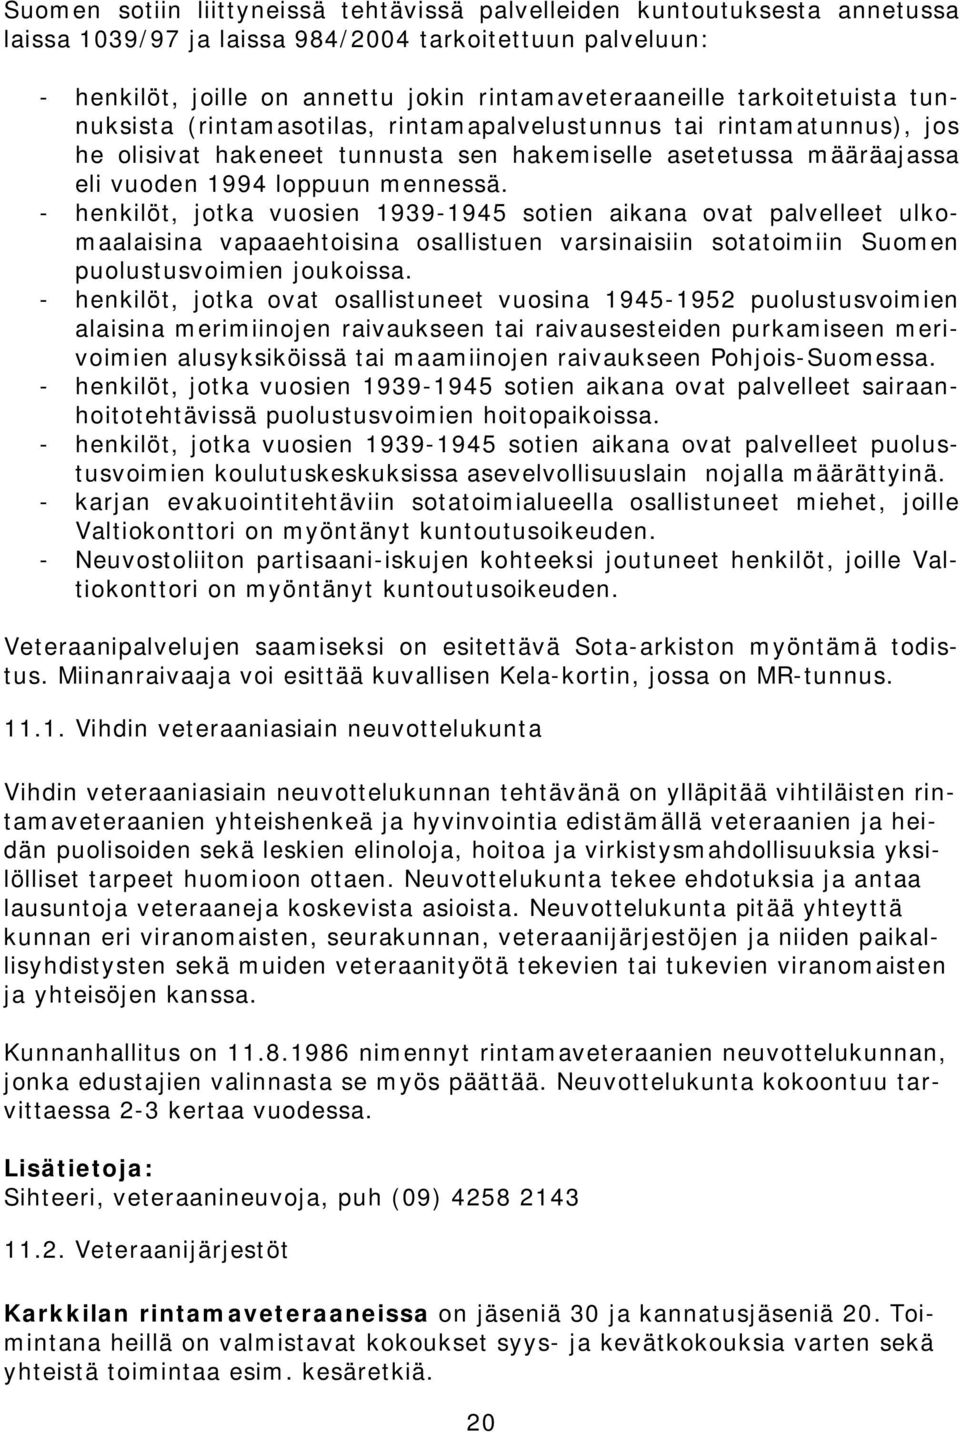 - henkilöt, jotka vuosien 1939-1945 sotien aikana ovat palvelleet ulkomaalaisina vapaaehtoisina osallistuen varsinaisiin sotatoimiin Suomen puolustusvoimien joukoissa.